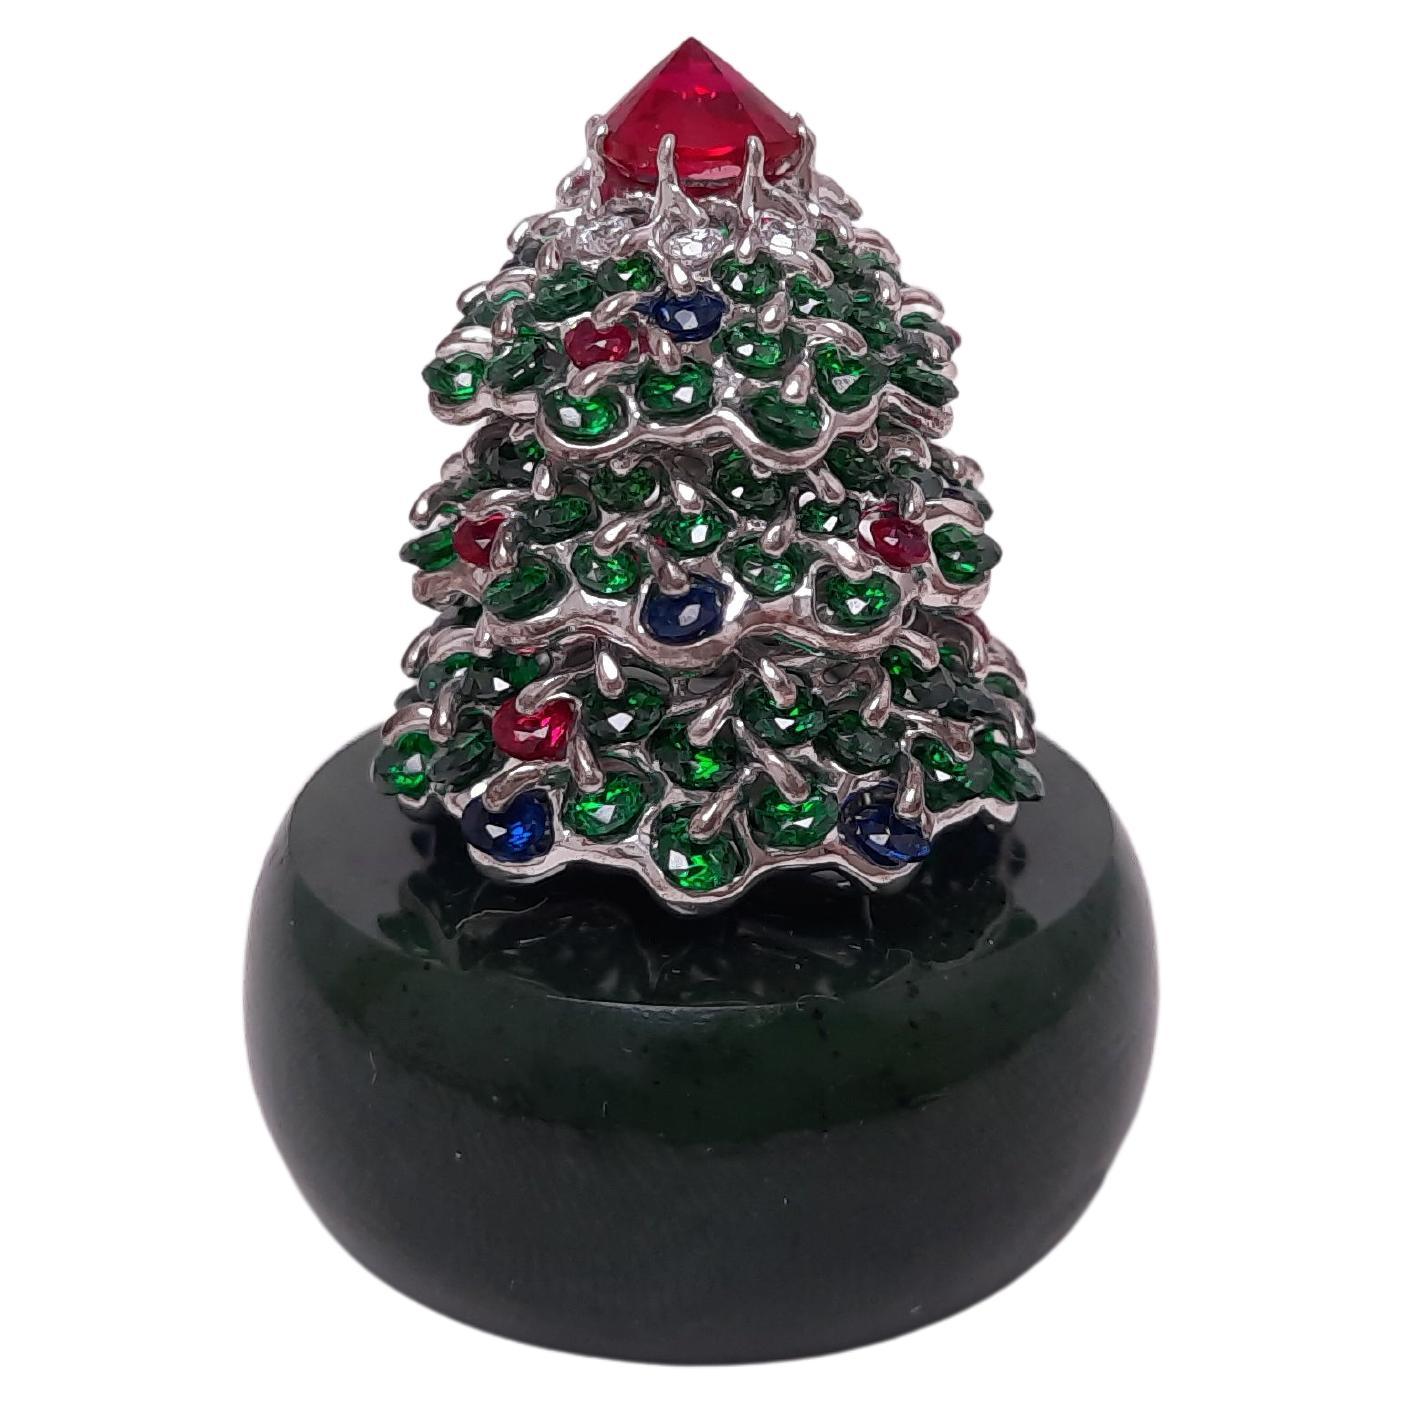 Le sapin de Noël de MOISEIKIN, composé d'argent et d'une base en néphrite de l'Oural, remplira votre maison de joie et de bonheur et illuminera l'année à venir !

La décoration intérieure de la maison sous la forme d'un arbre de Noël est un cadeau